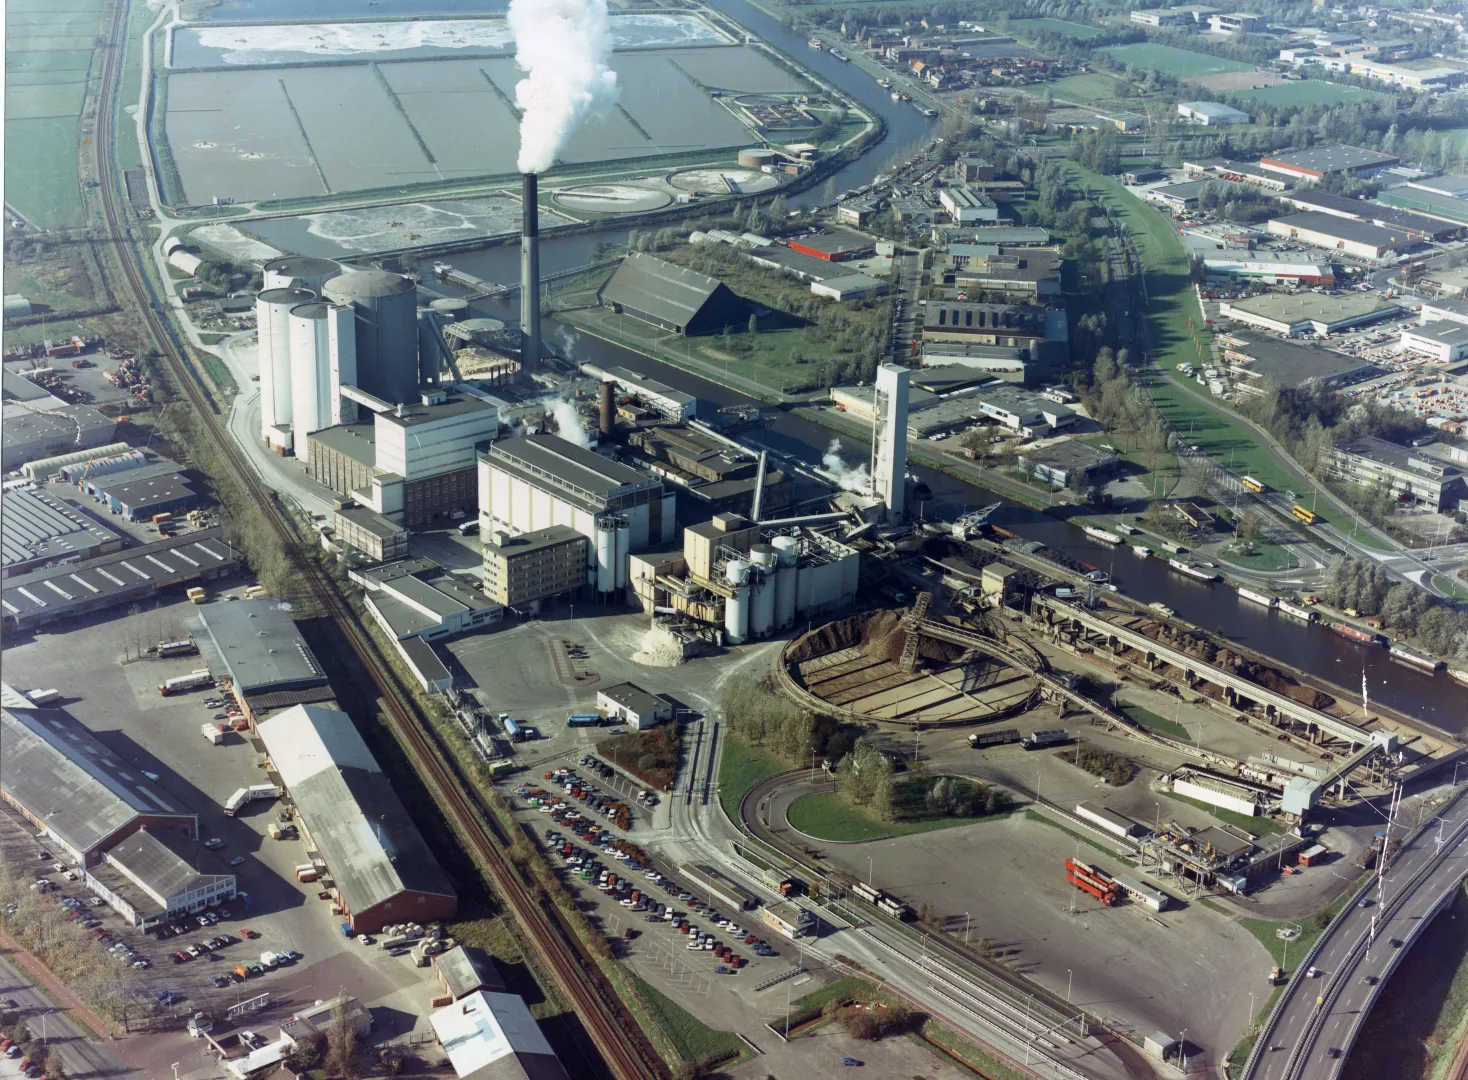 Suikerfabriek overzicht in bedrijf